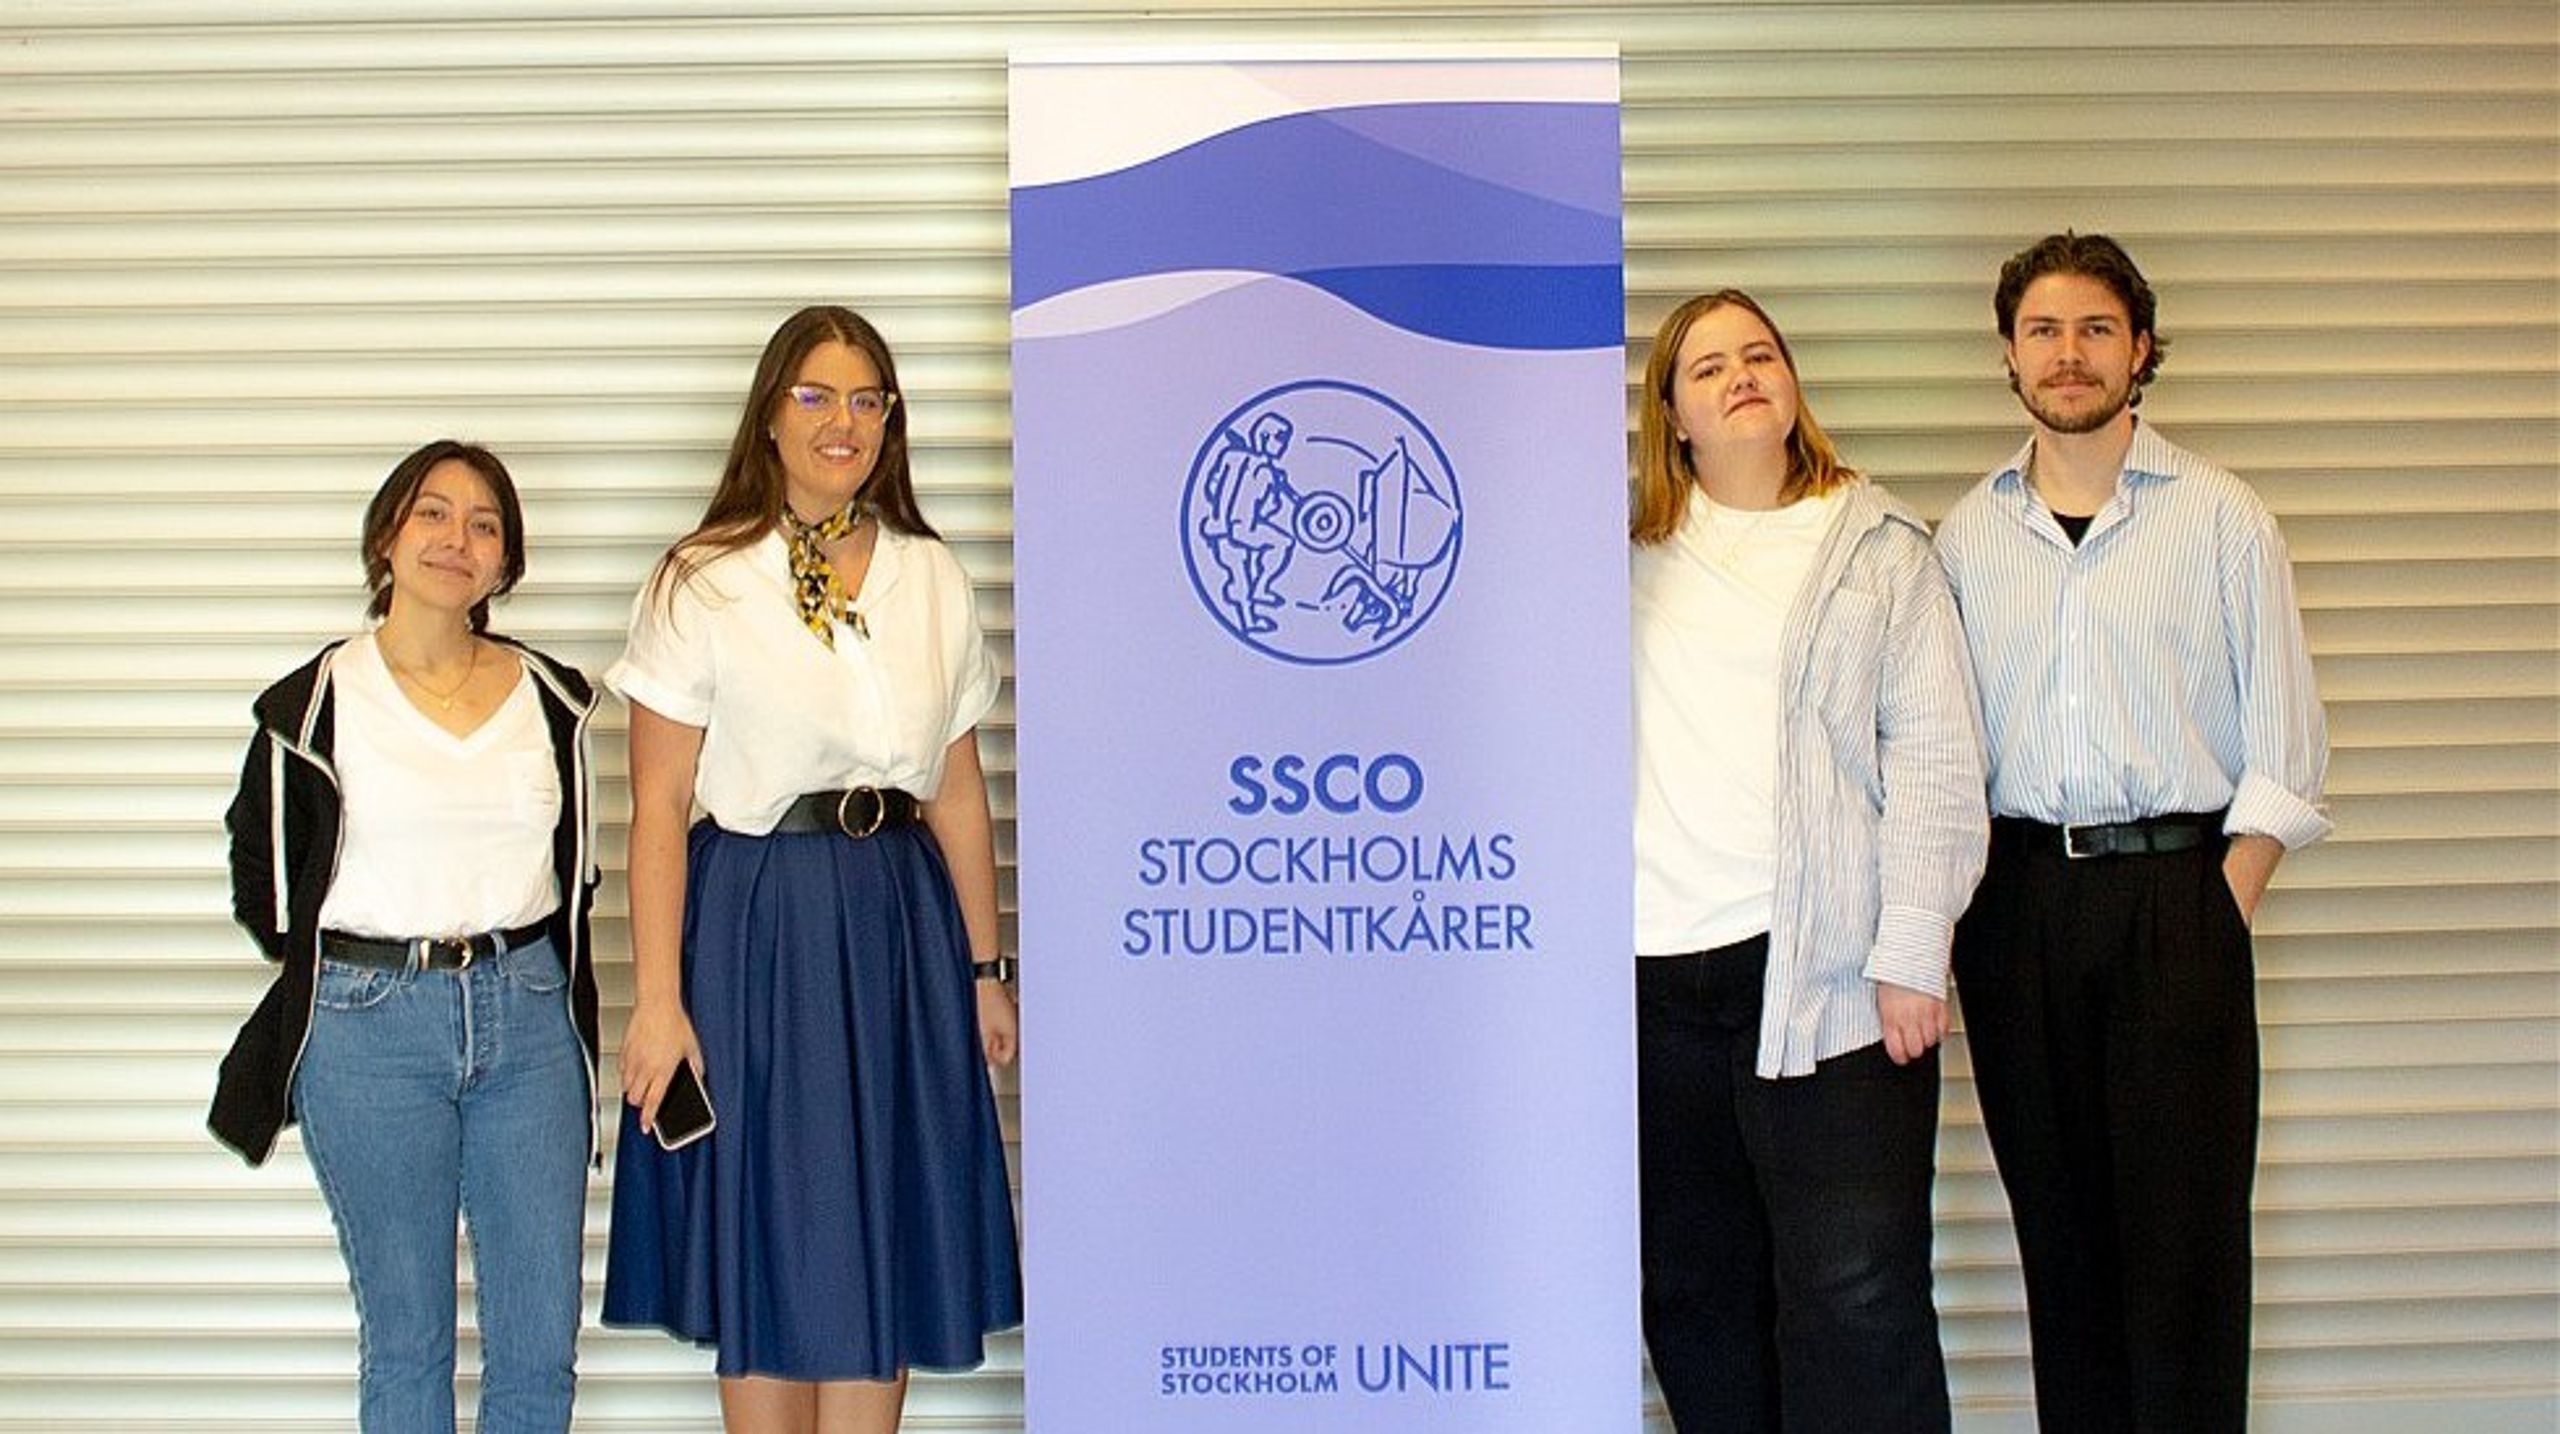 Från vänster: Viktorija Pesic (ny ordförande), Sofia Lindeberg (avgående vice ordförande), Sofia Holmdahl (avgående ordföranden) och Martin Hansson (avgående vice ordföranden).&nbsp;